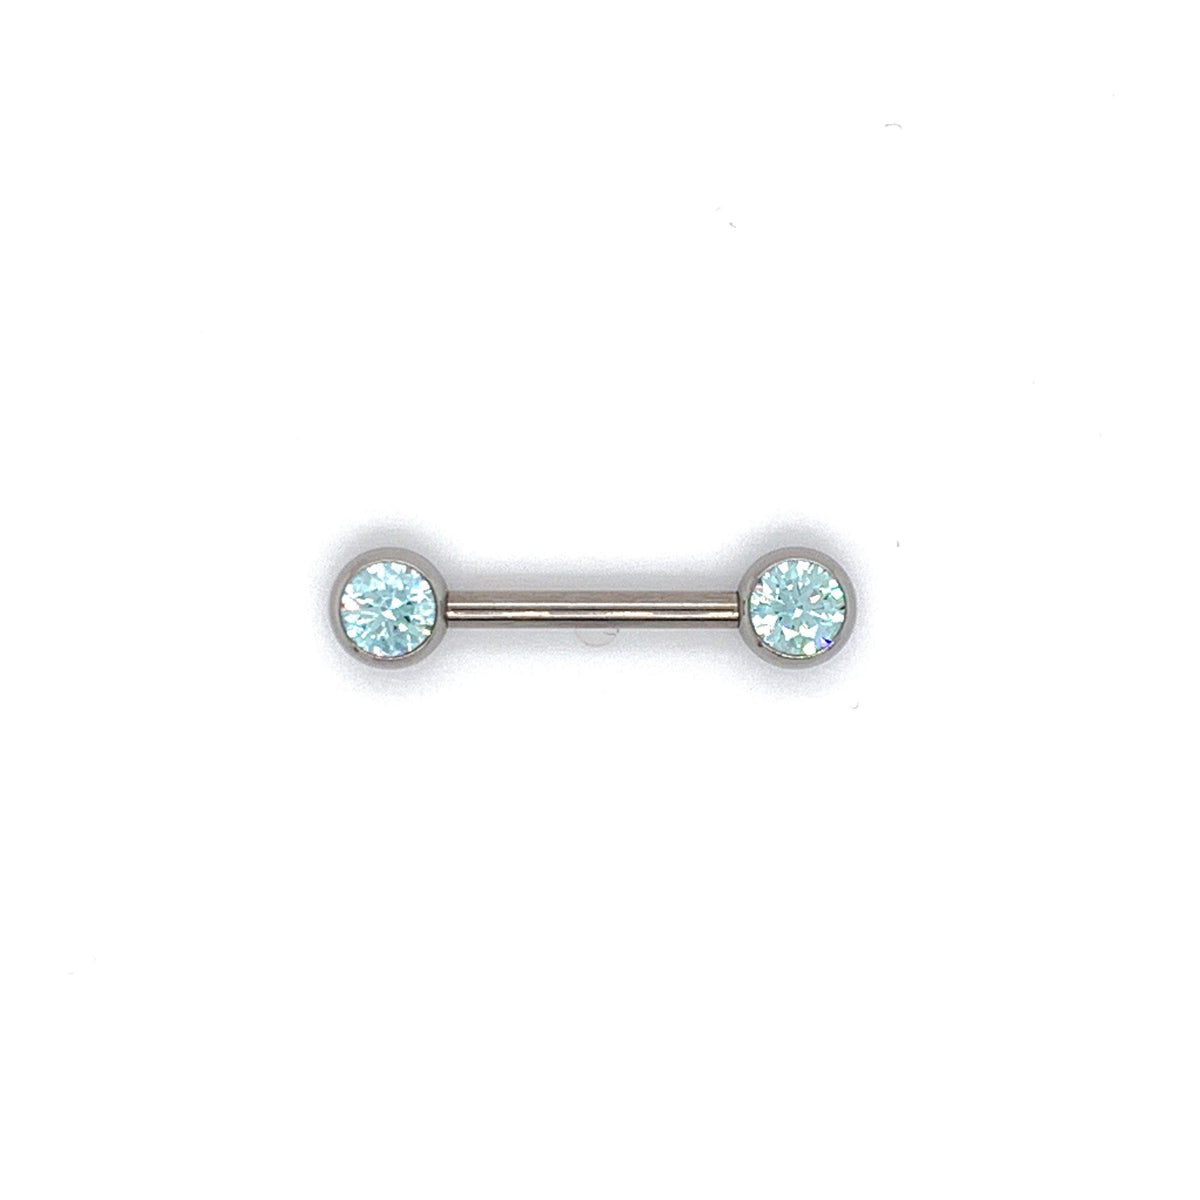 NeoMetal Nipple Bar with Frosty Mint CZ Gems THREADLESS - Isha Body Jewellery